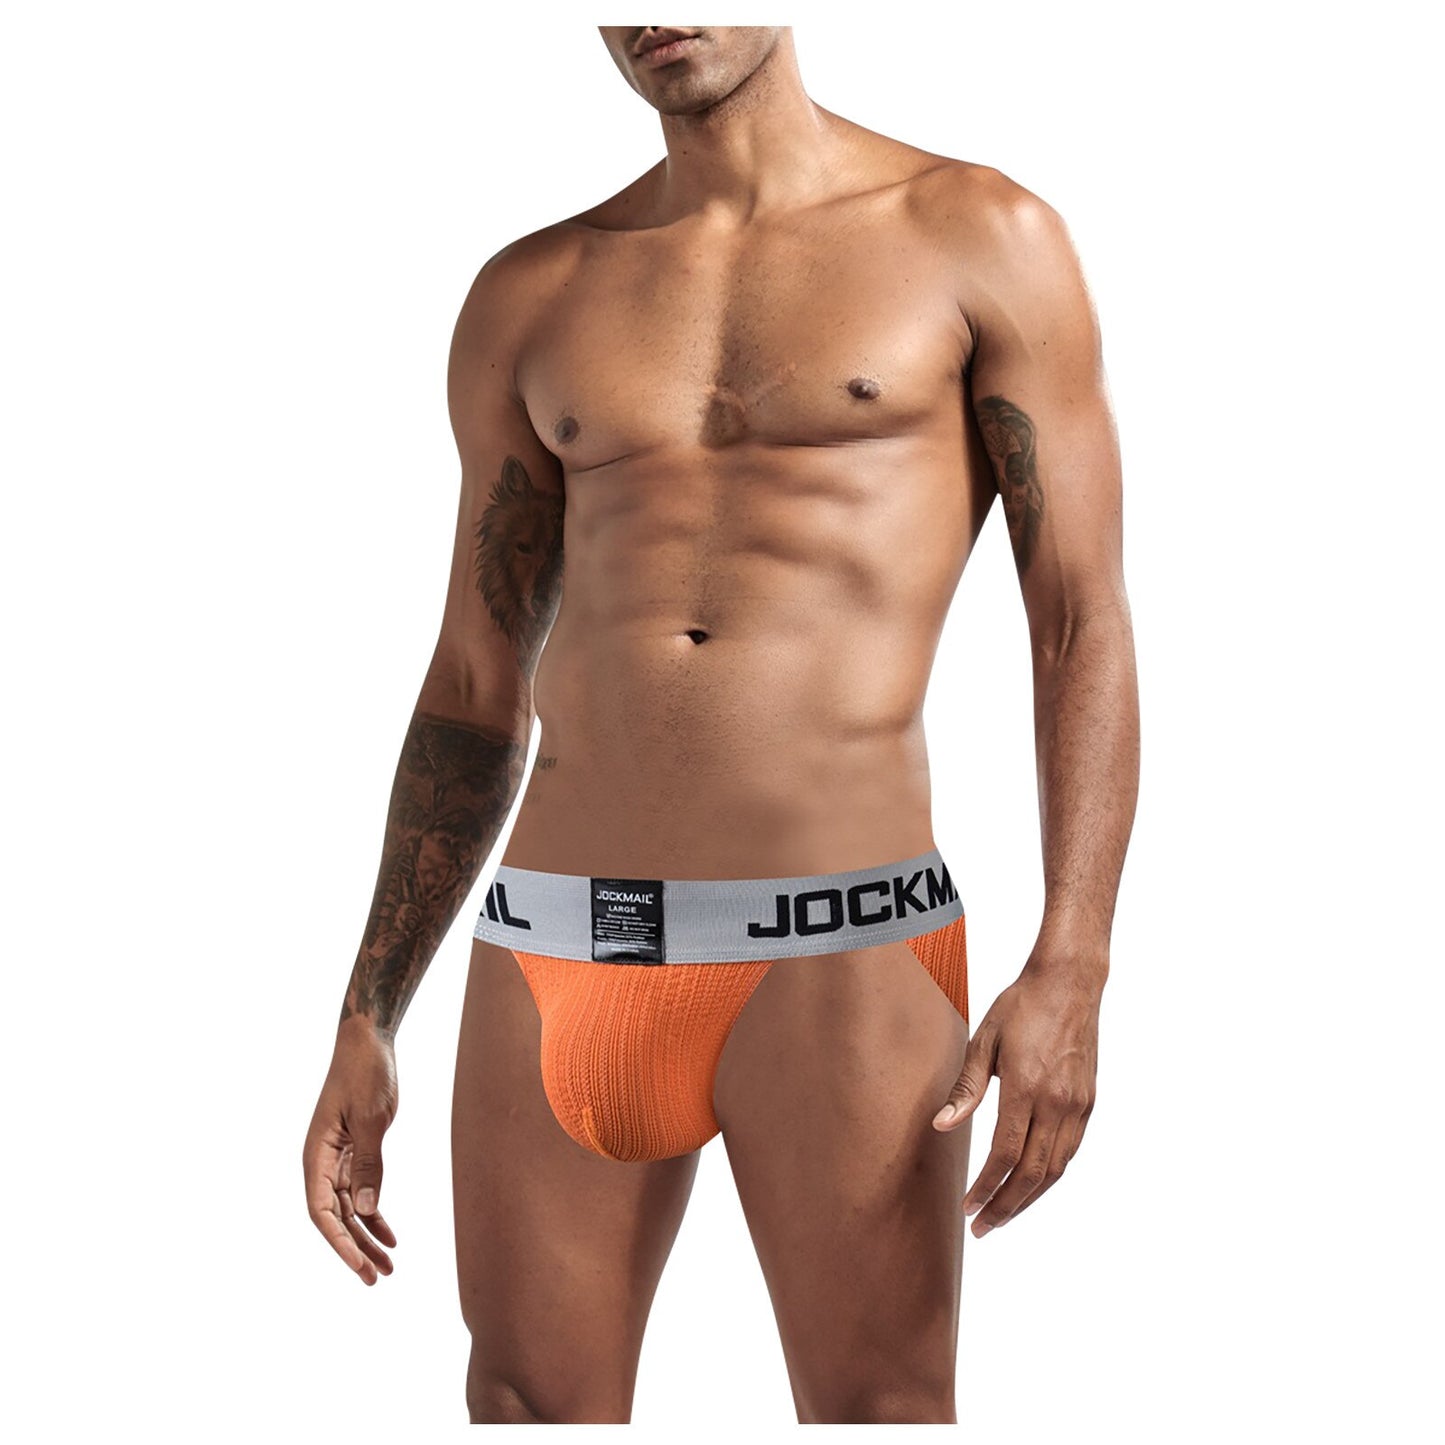 JOCKMAIL Men's Underwear Jockstraps